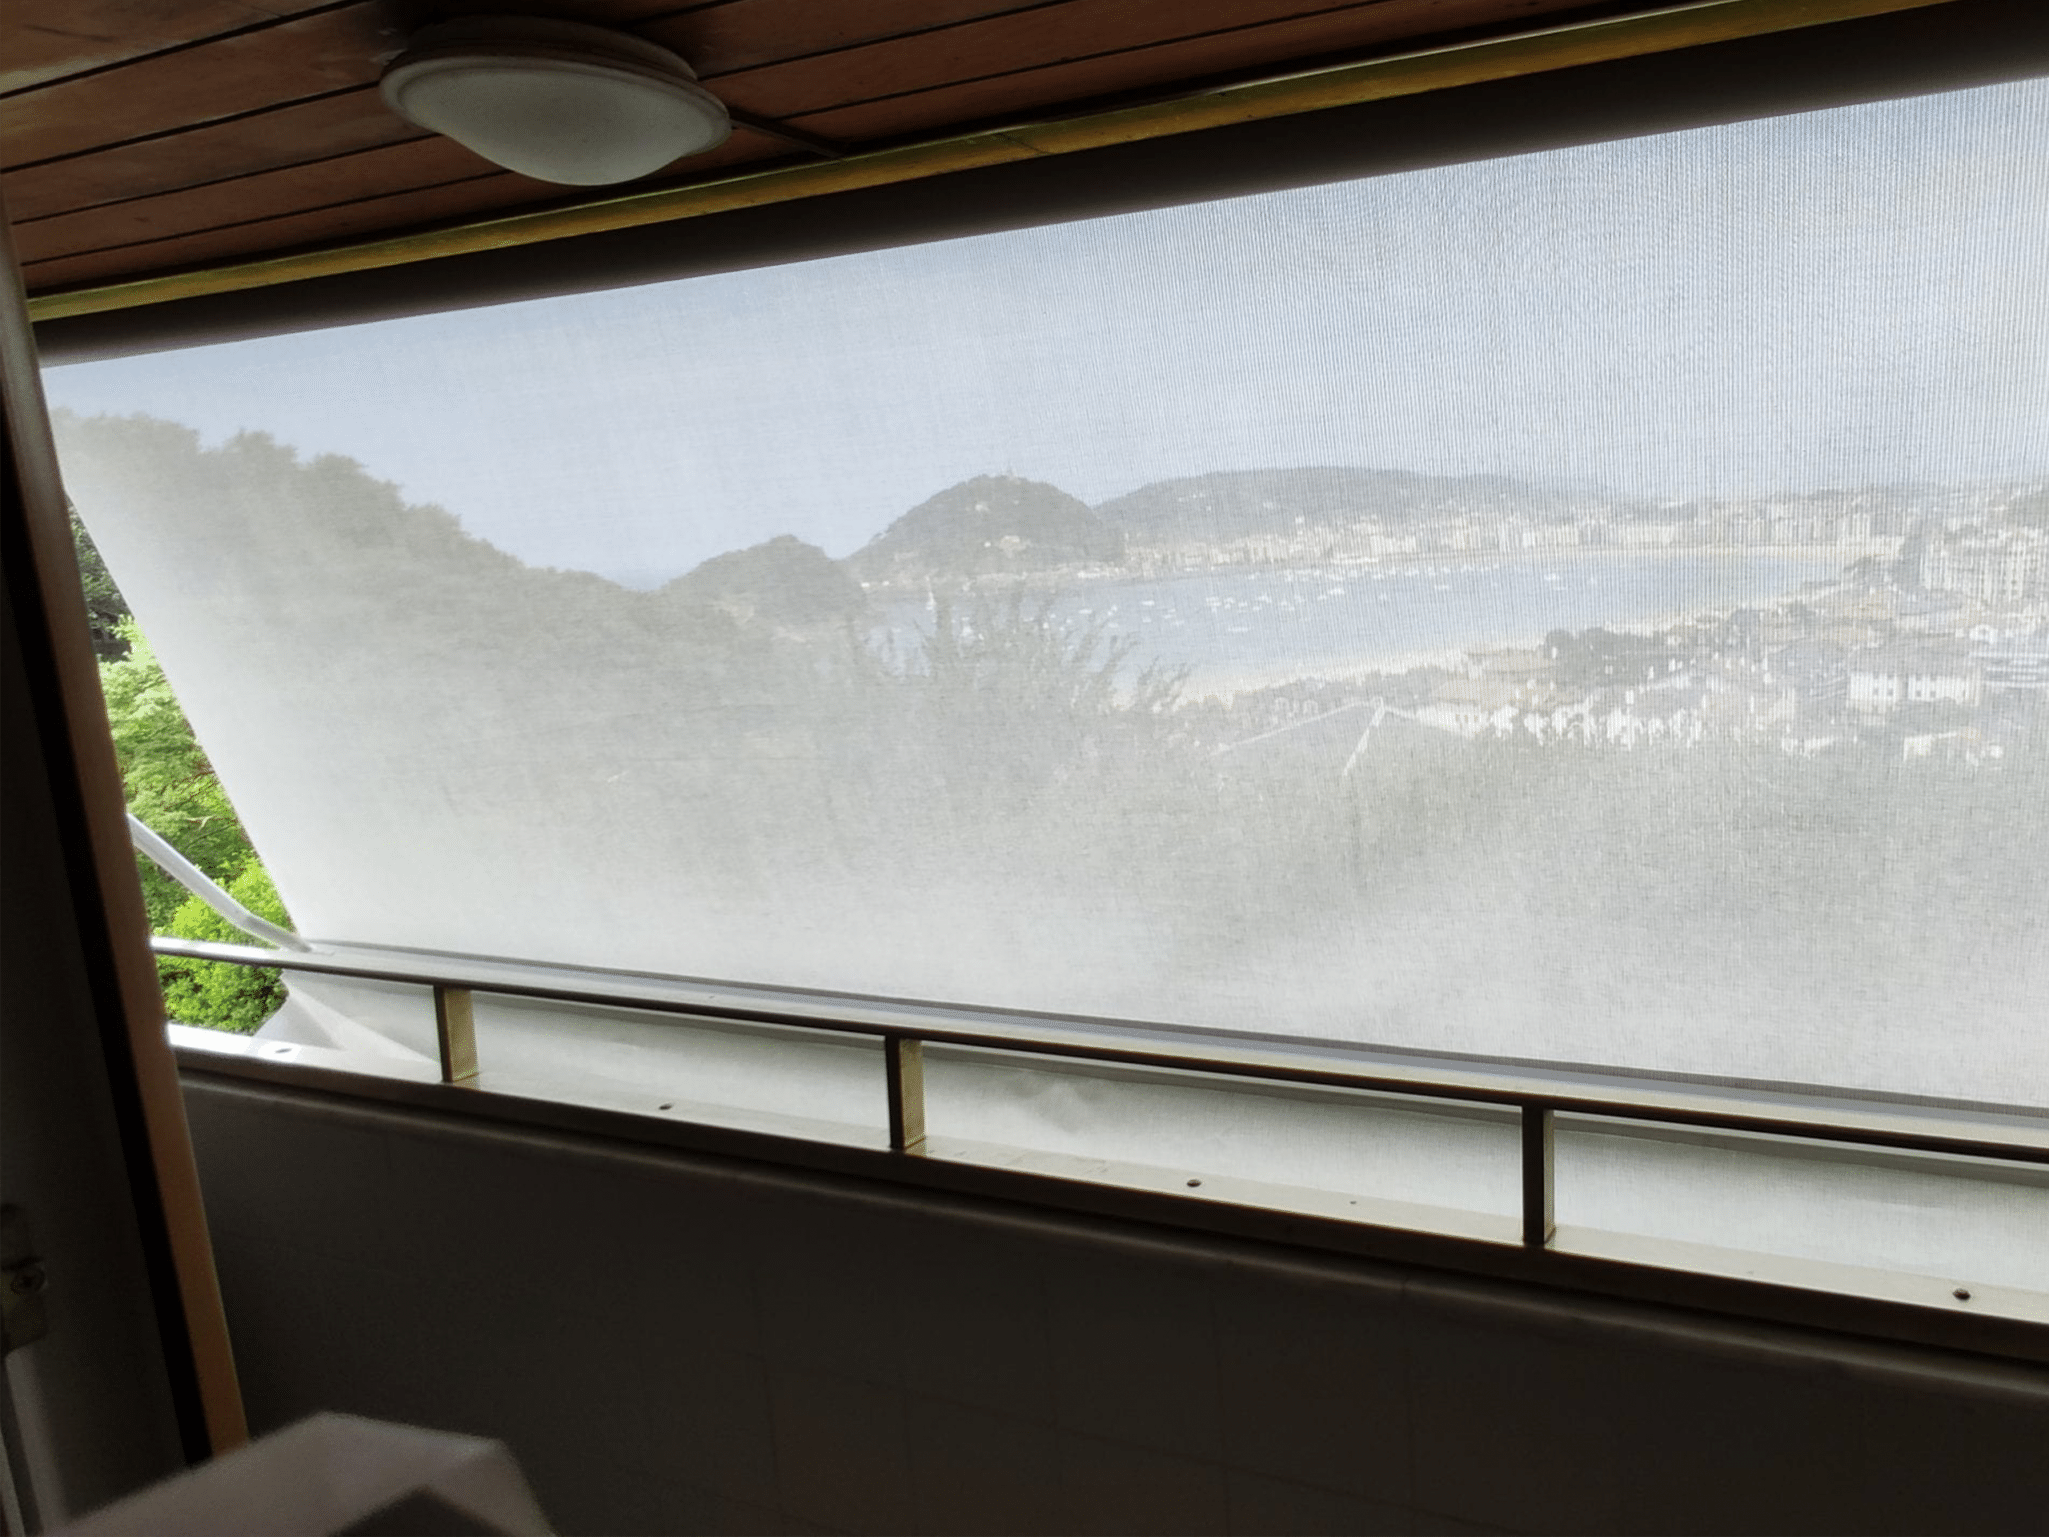 Toldo brazo punto recto tejido screen sunworker microperforado. Protección solar y visibilidad del exterior. San Sebastian. Toldos Elósegui